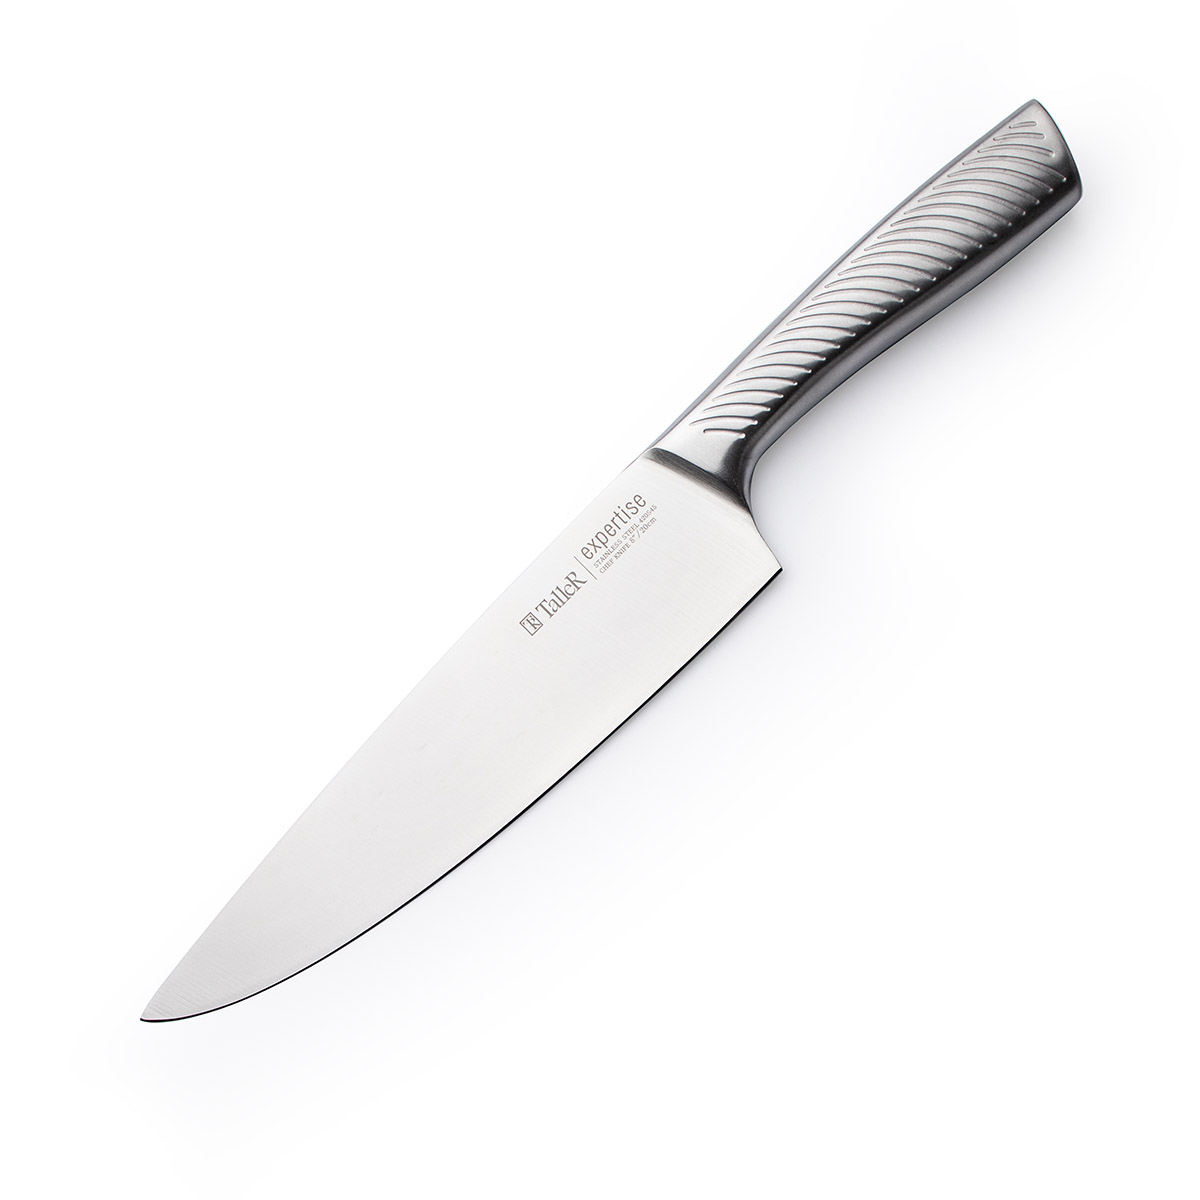 Taller expertise. Taller expertise ножи. Нож для хлеба Taller. Нож Taller tr-22049.